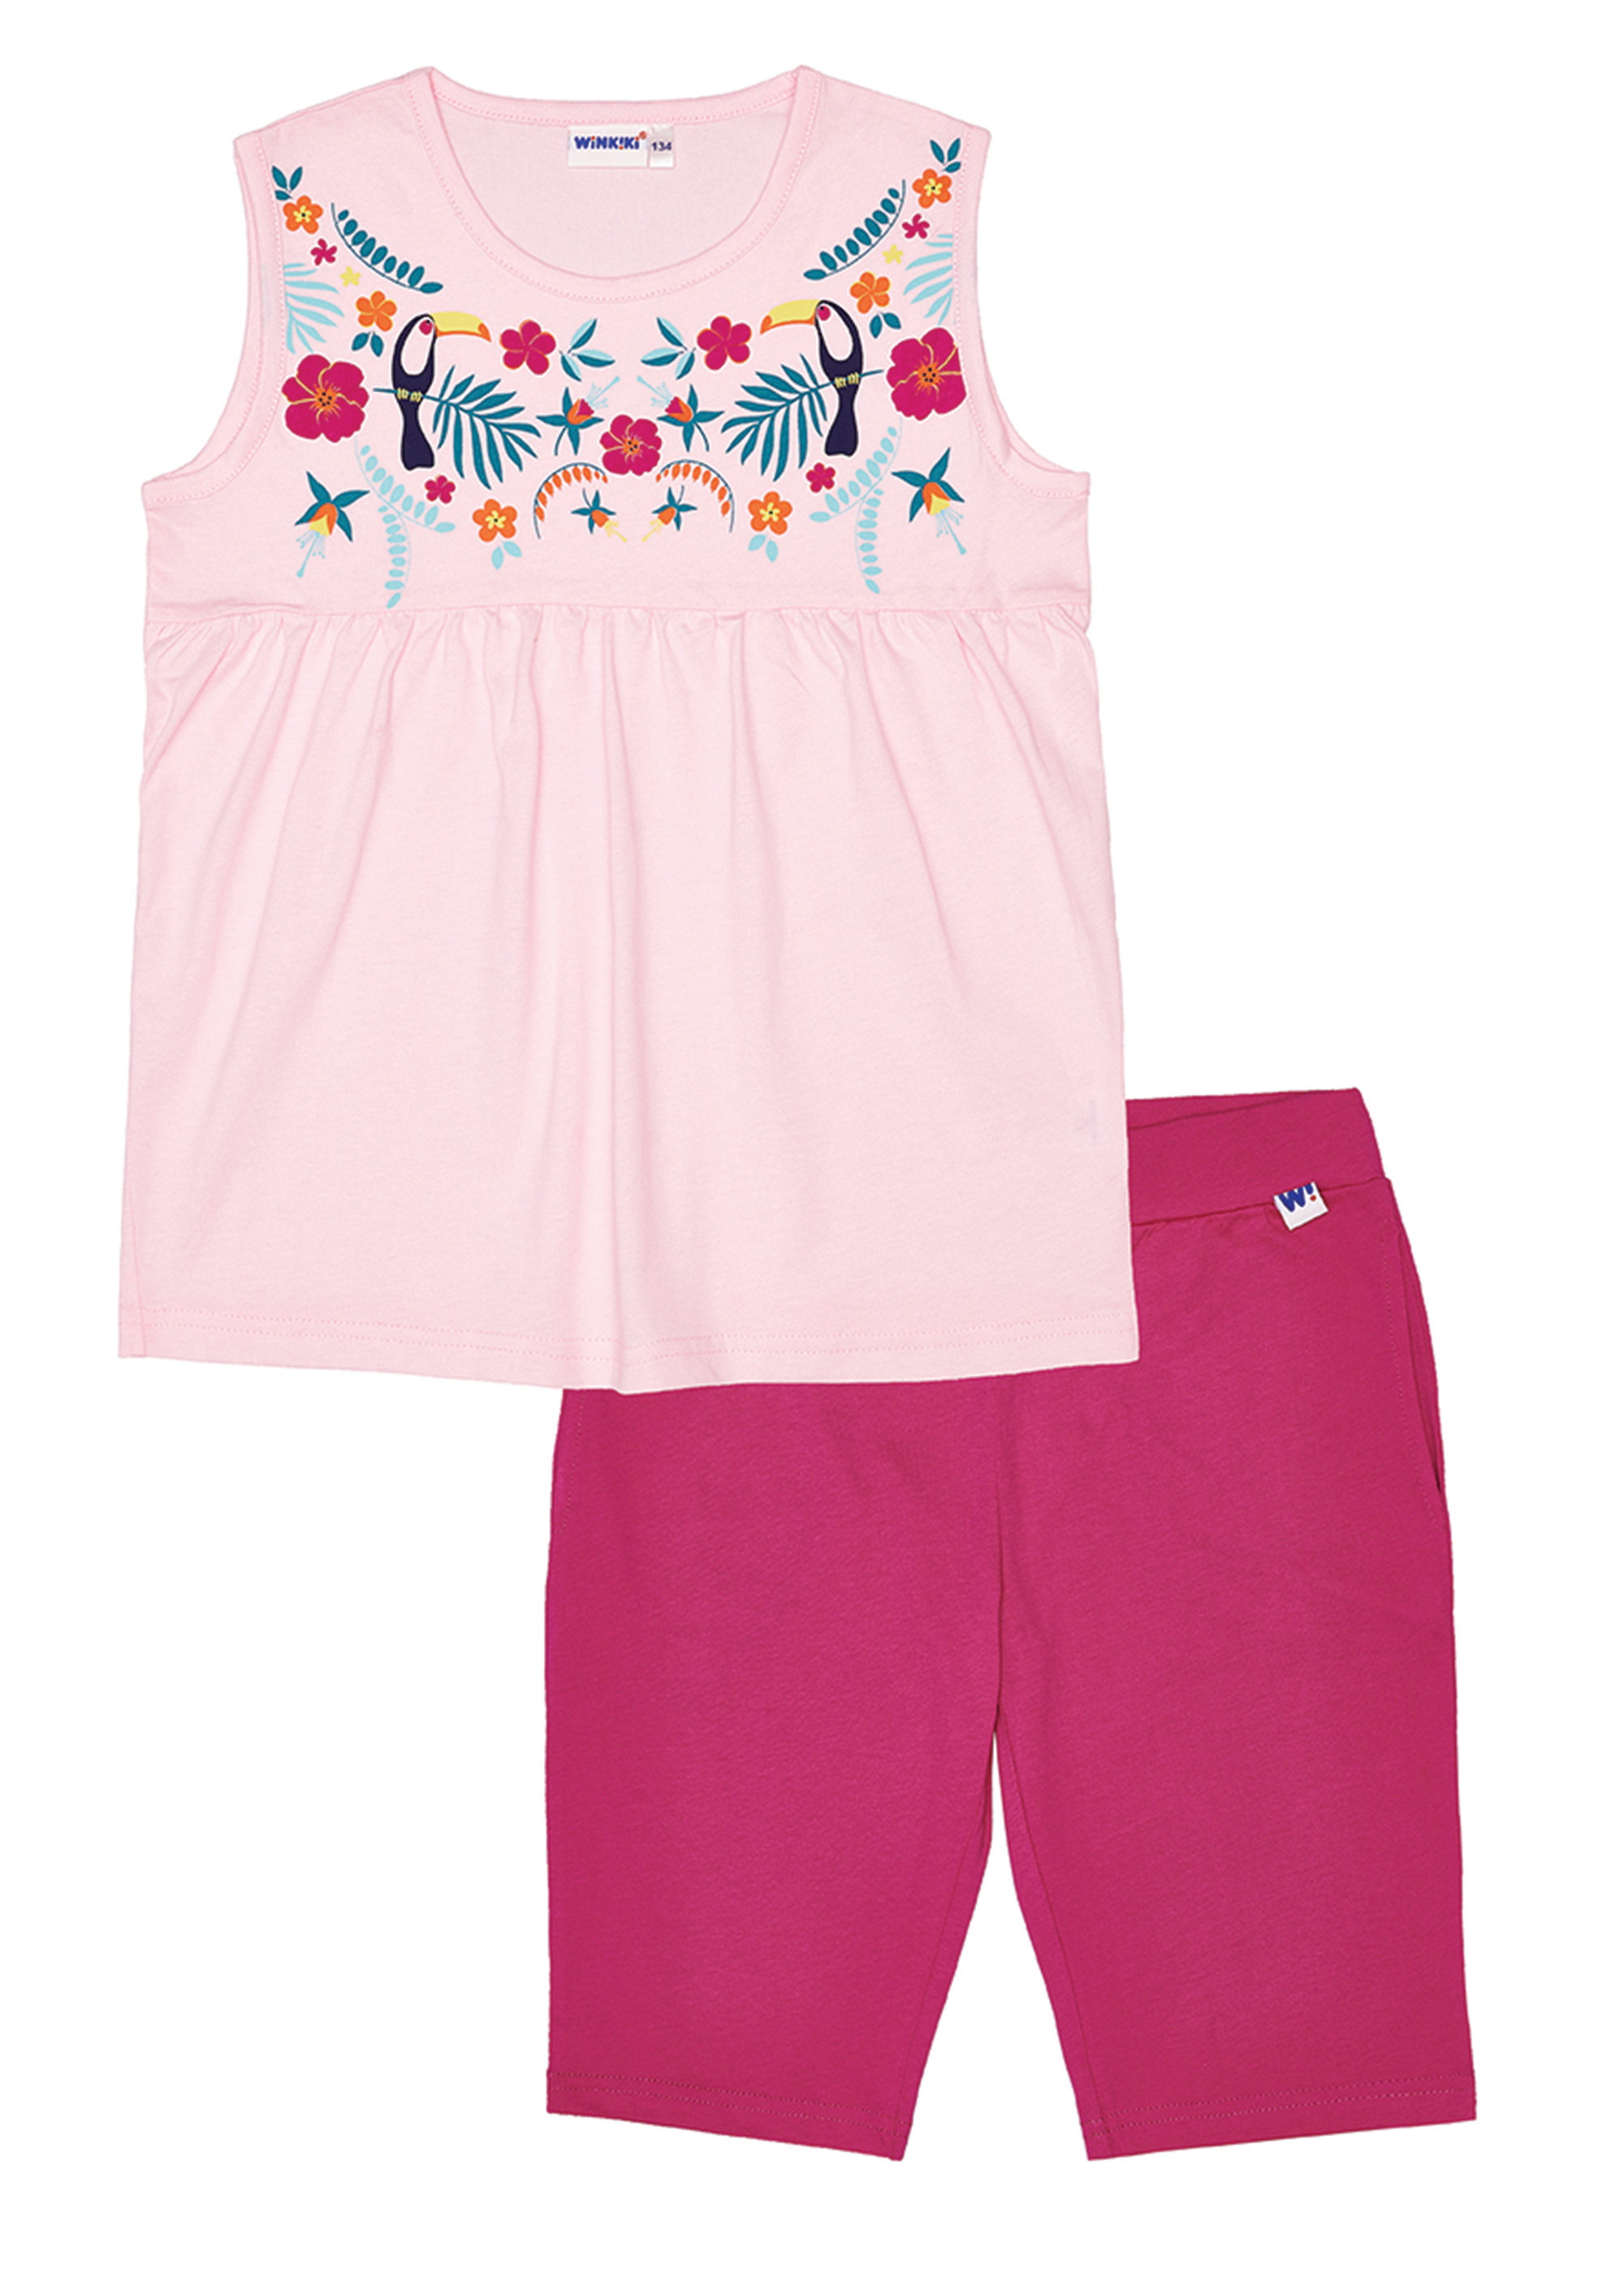 Dívčí pyžamo - Winkiki WJG 91170, růžová Barva: Růžová, Velikost: 128